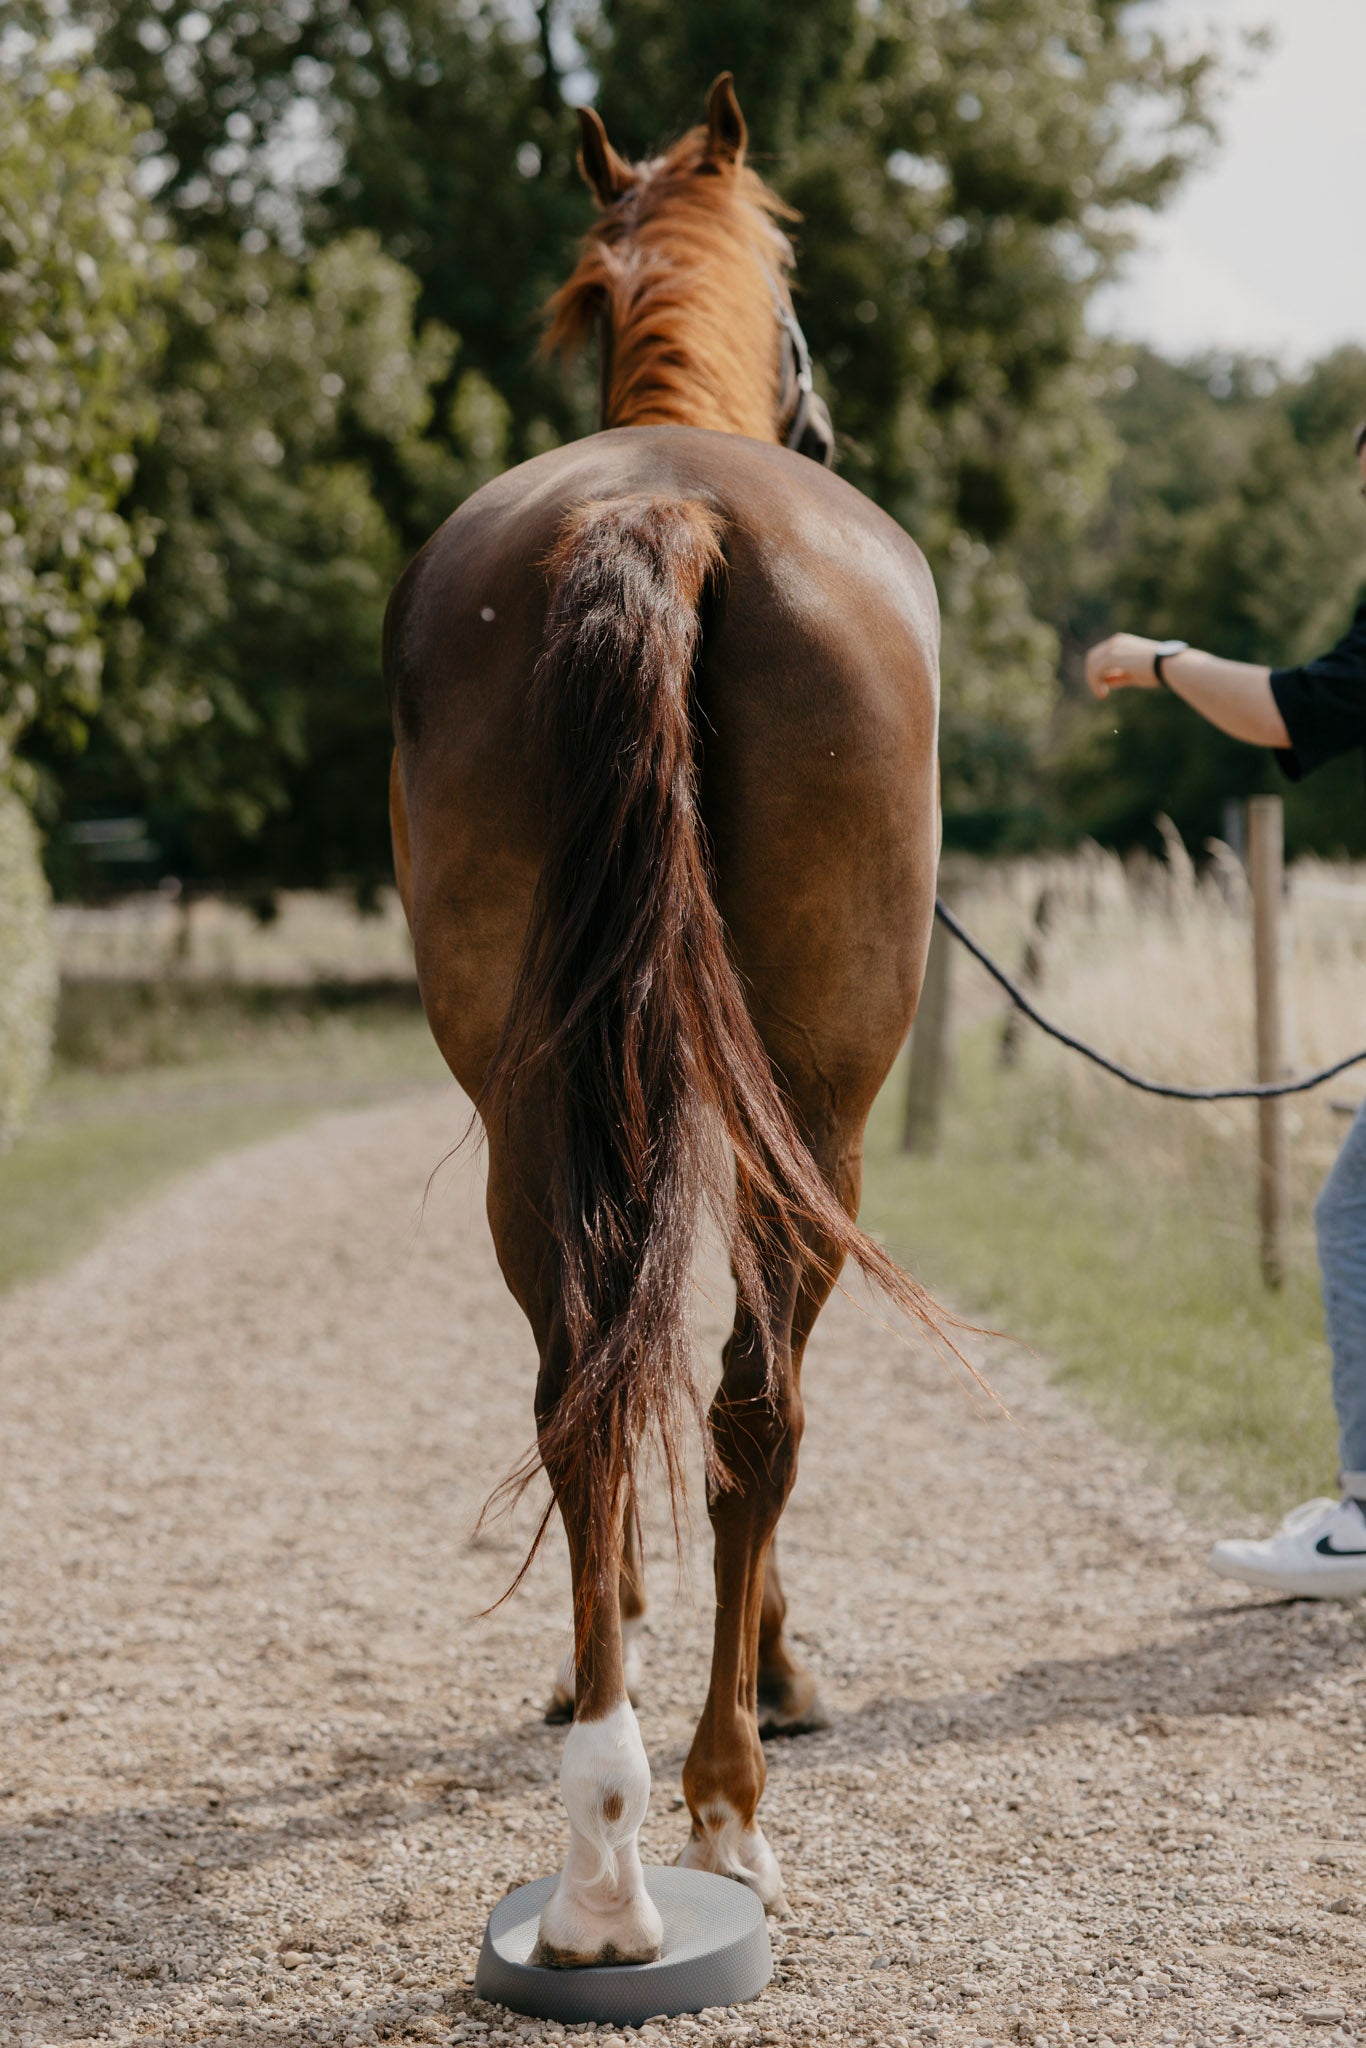 Mit den Balance-Pads können gezielte Übungen durchgeführt werden, um die Muskeln des Pferdes zu stärken